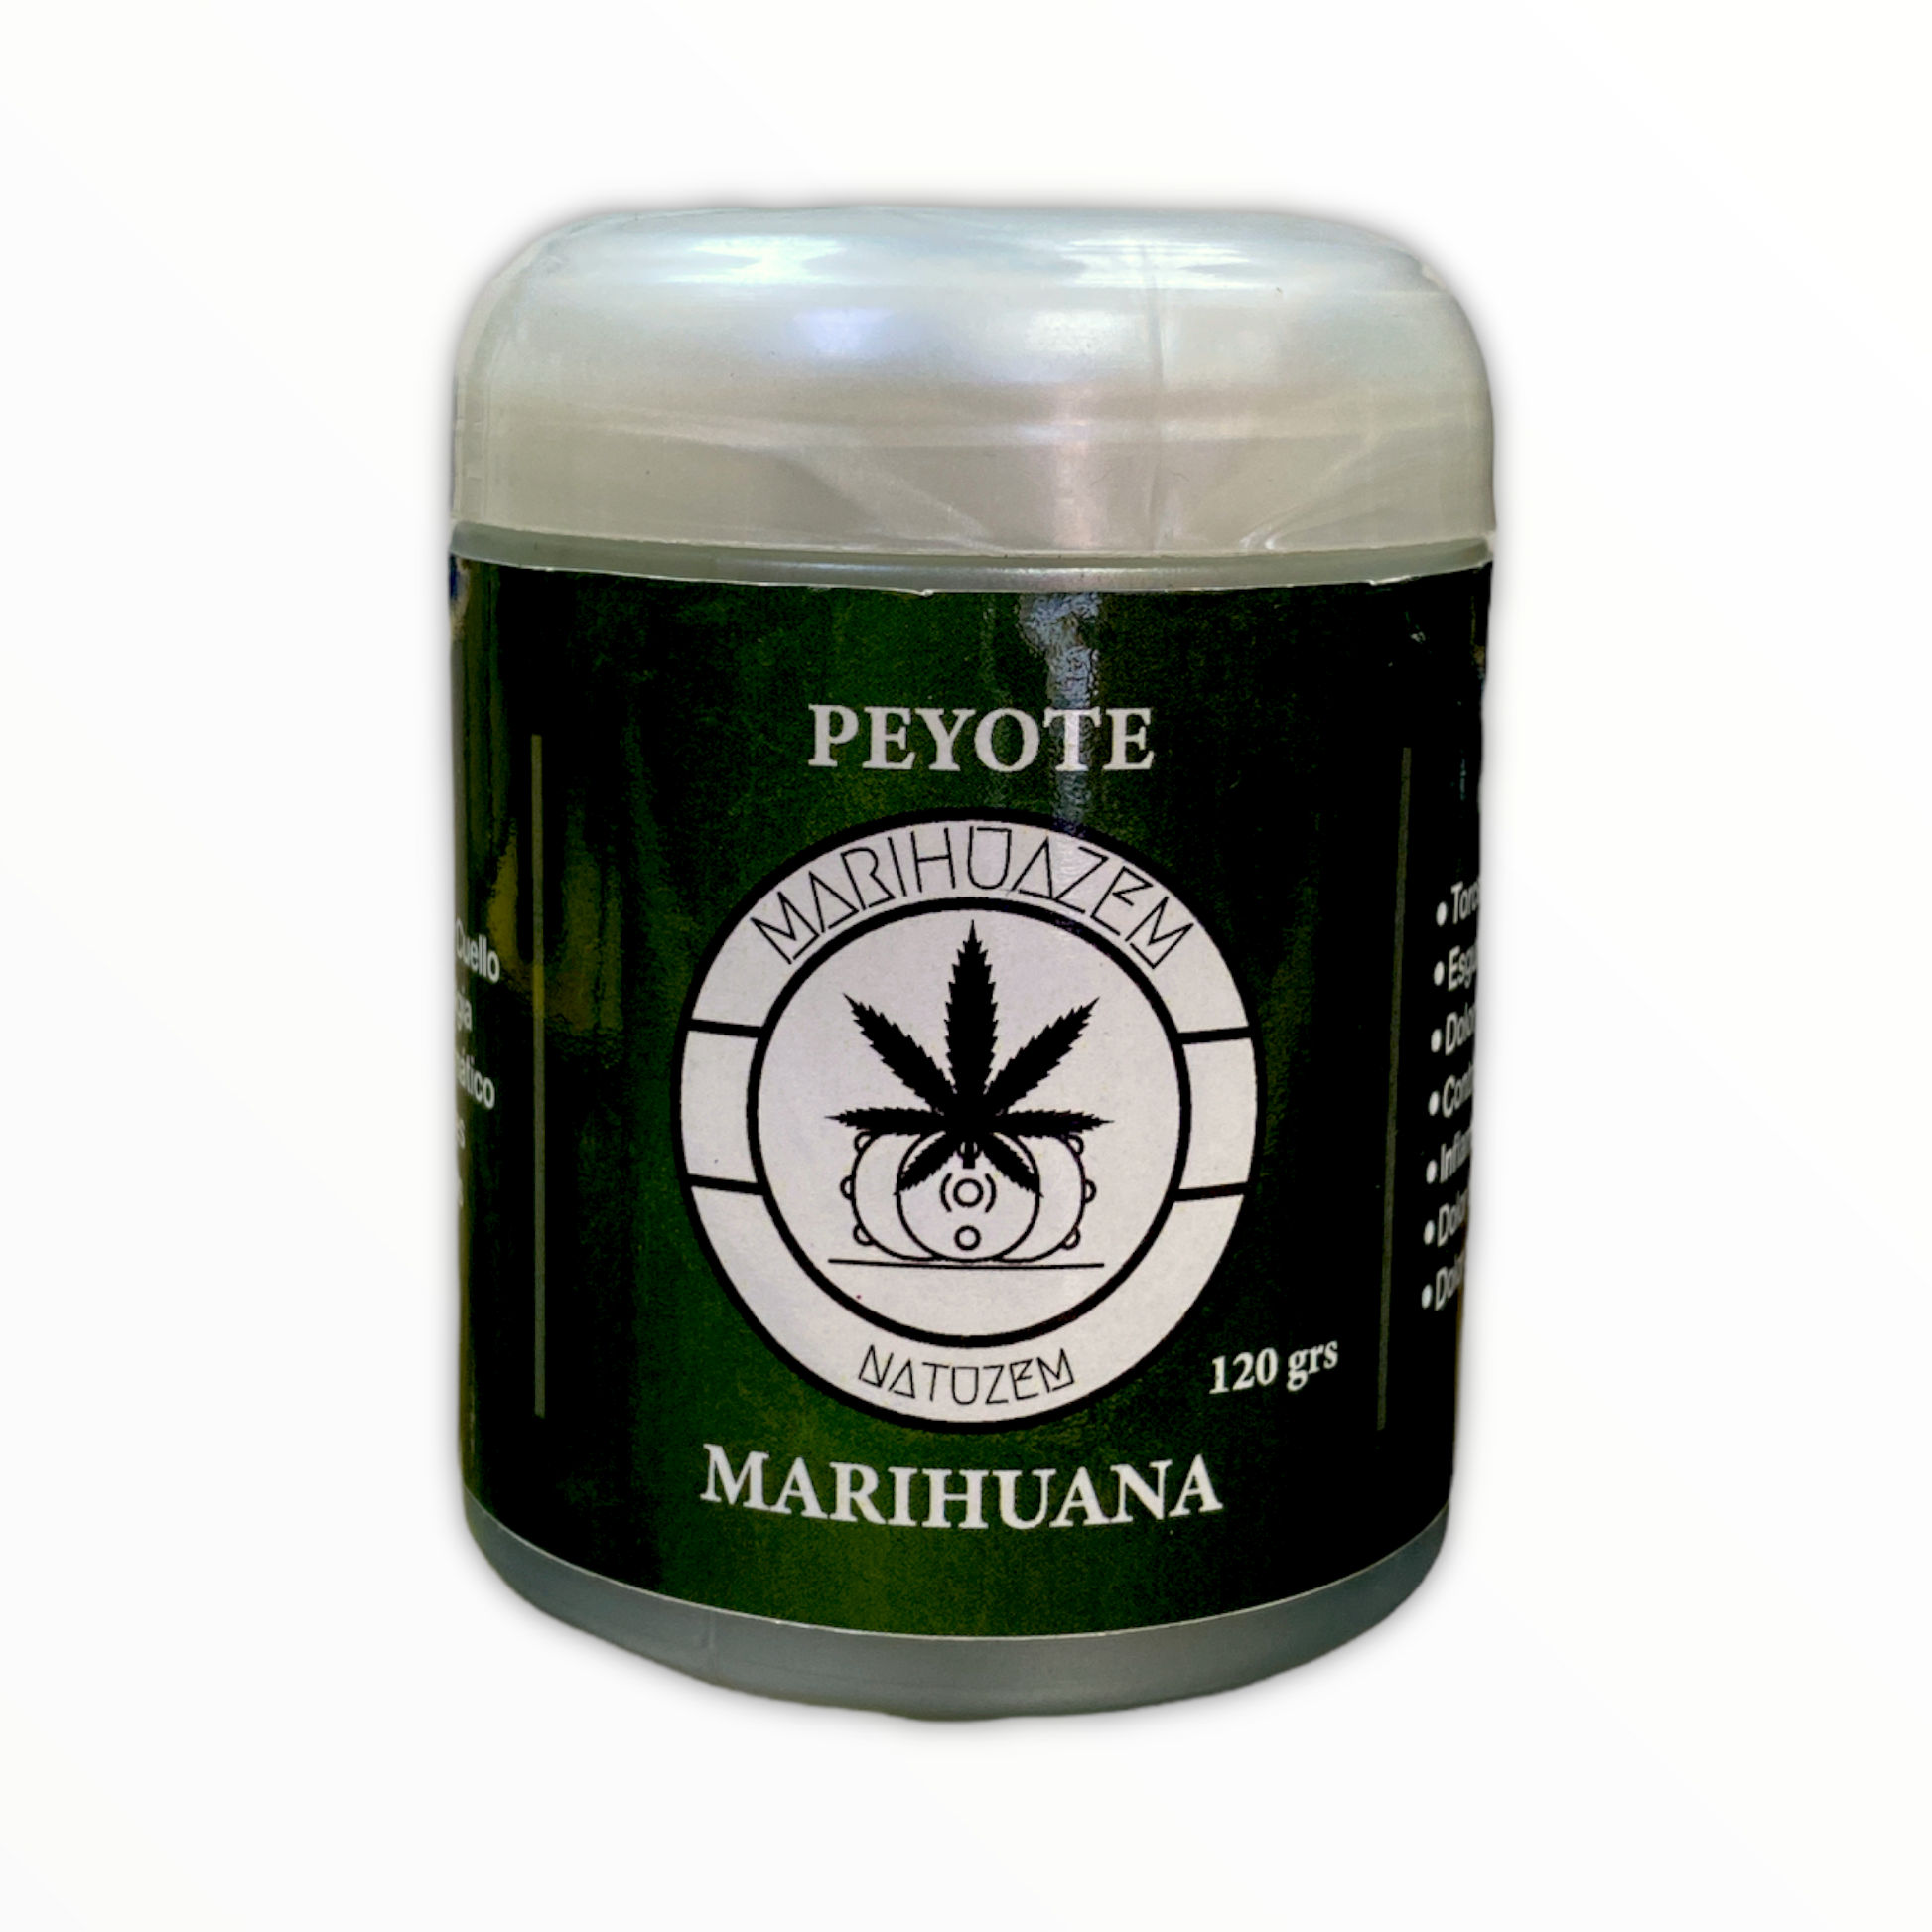 Pomada Marihuazem con Peyote y Marihuana 120 g